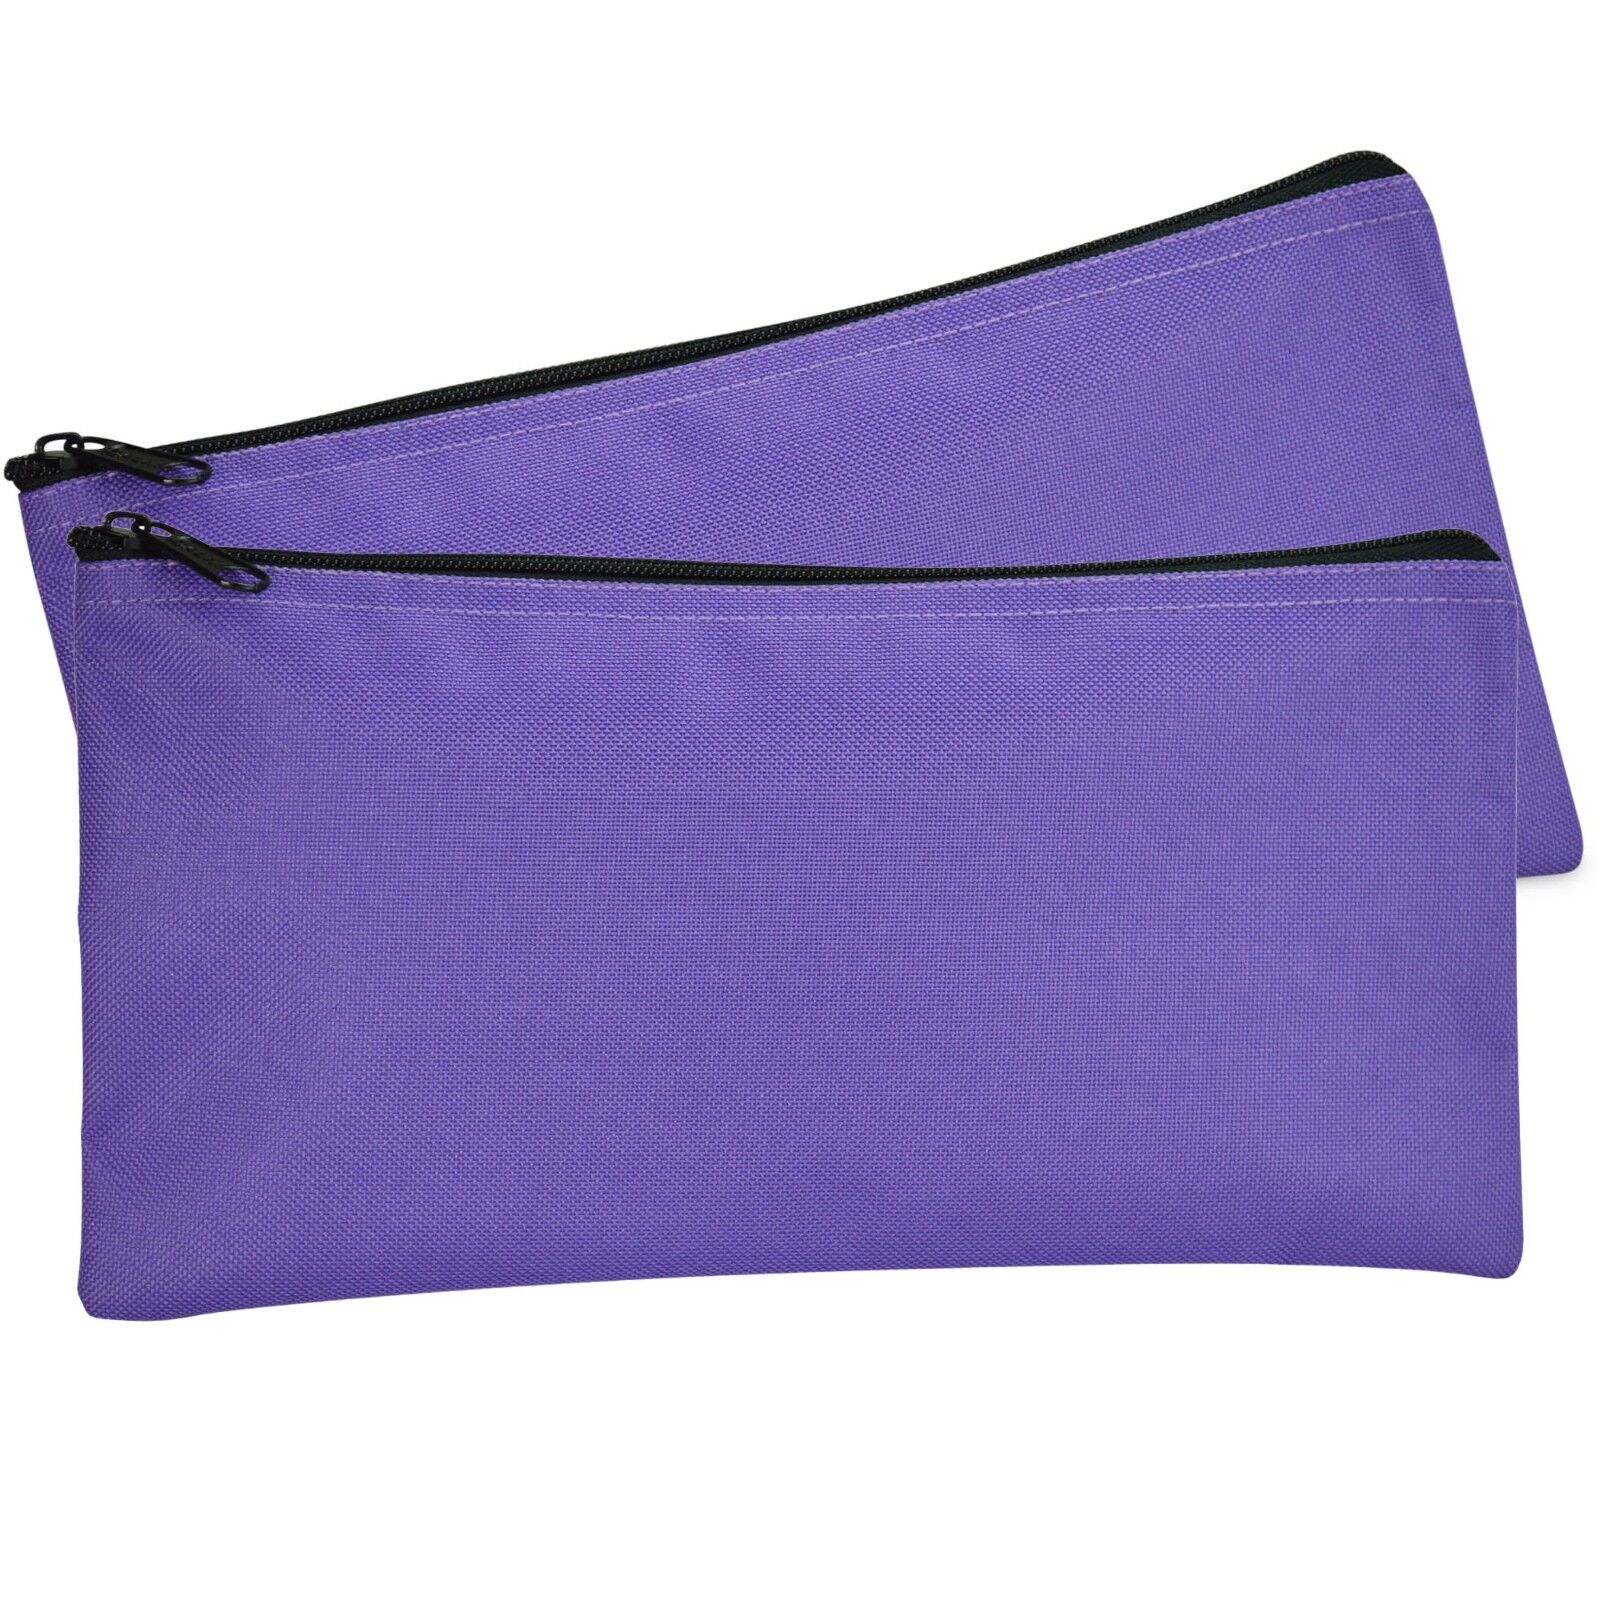 DALIX Zipper Money Bank Bag Pencil Pouch Makeup Travel Accessories Purple 2 PACK